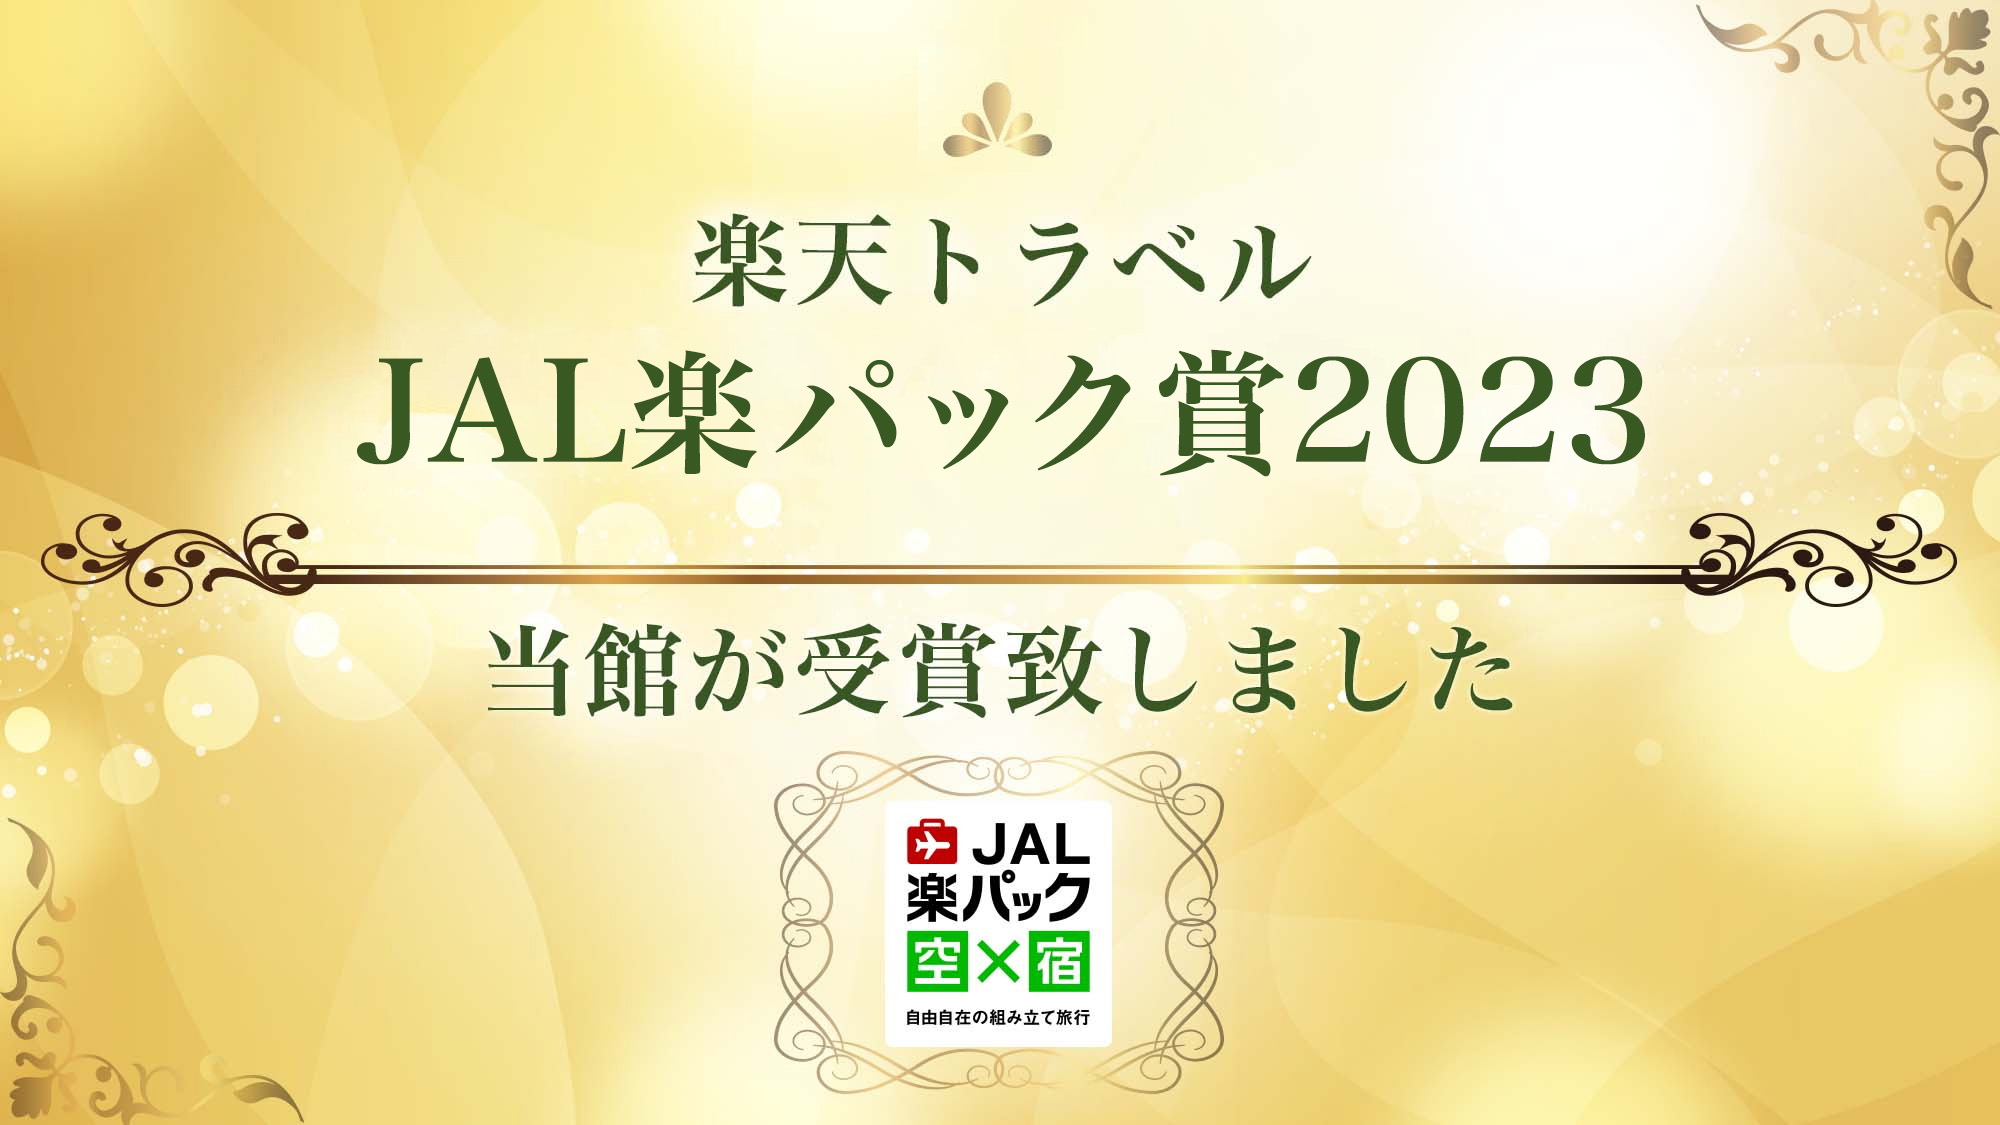 JAL楽パック賞2023を受賞いたしました